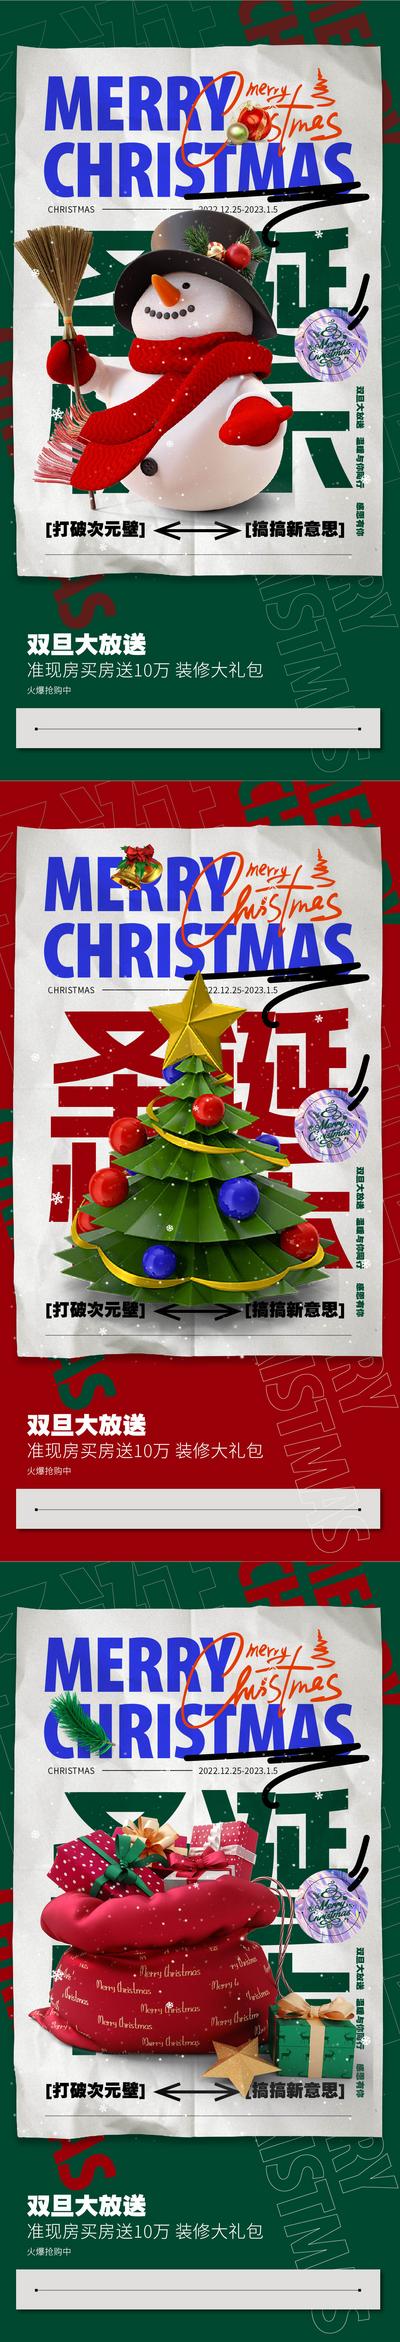 南门网 海报 西方国际节日 圣诞节 元旦节 圣诞树 雪人 礼物 c4d 系列